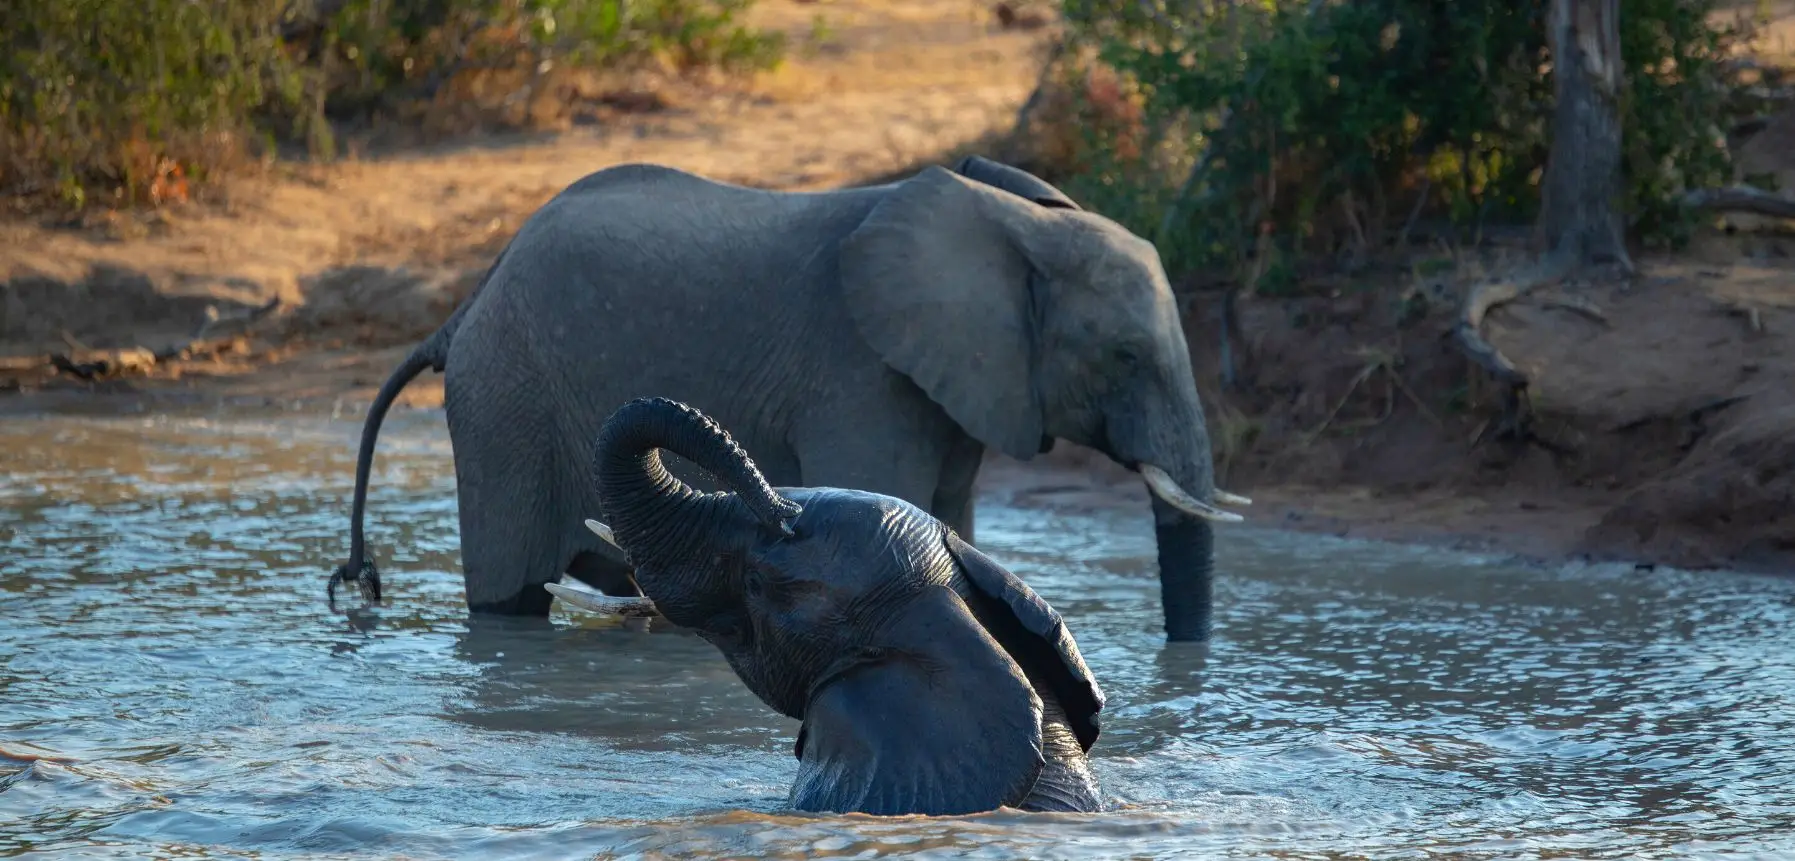 Bathe Elephants in Kodanad 